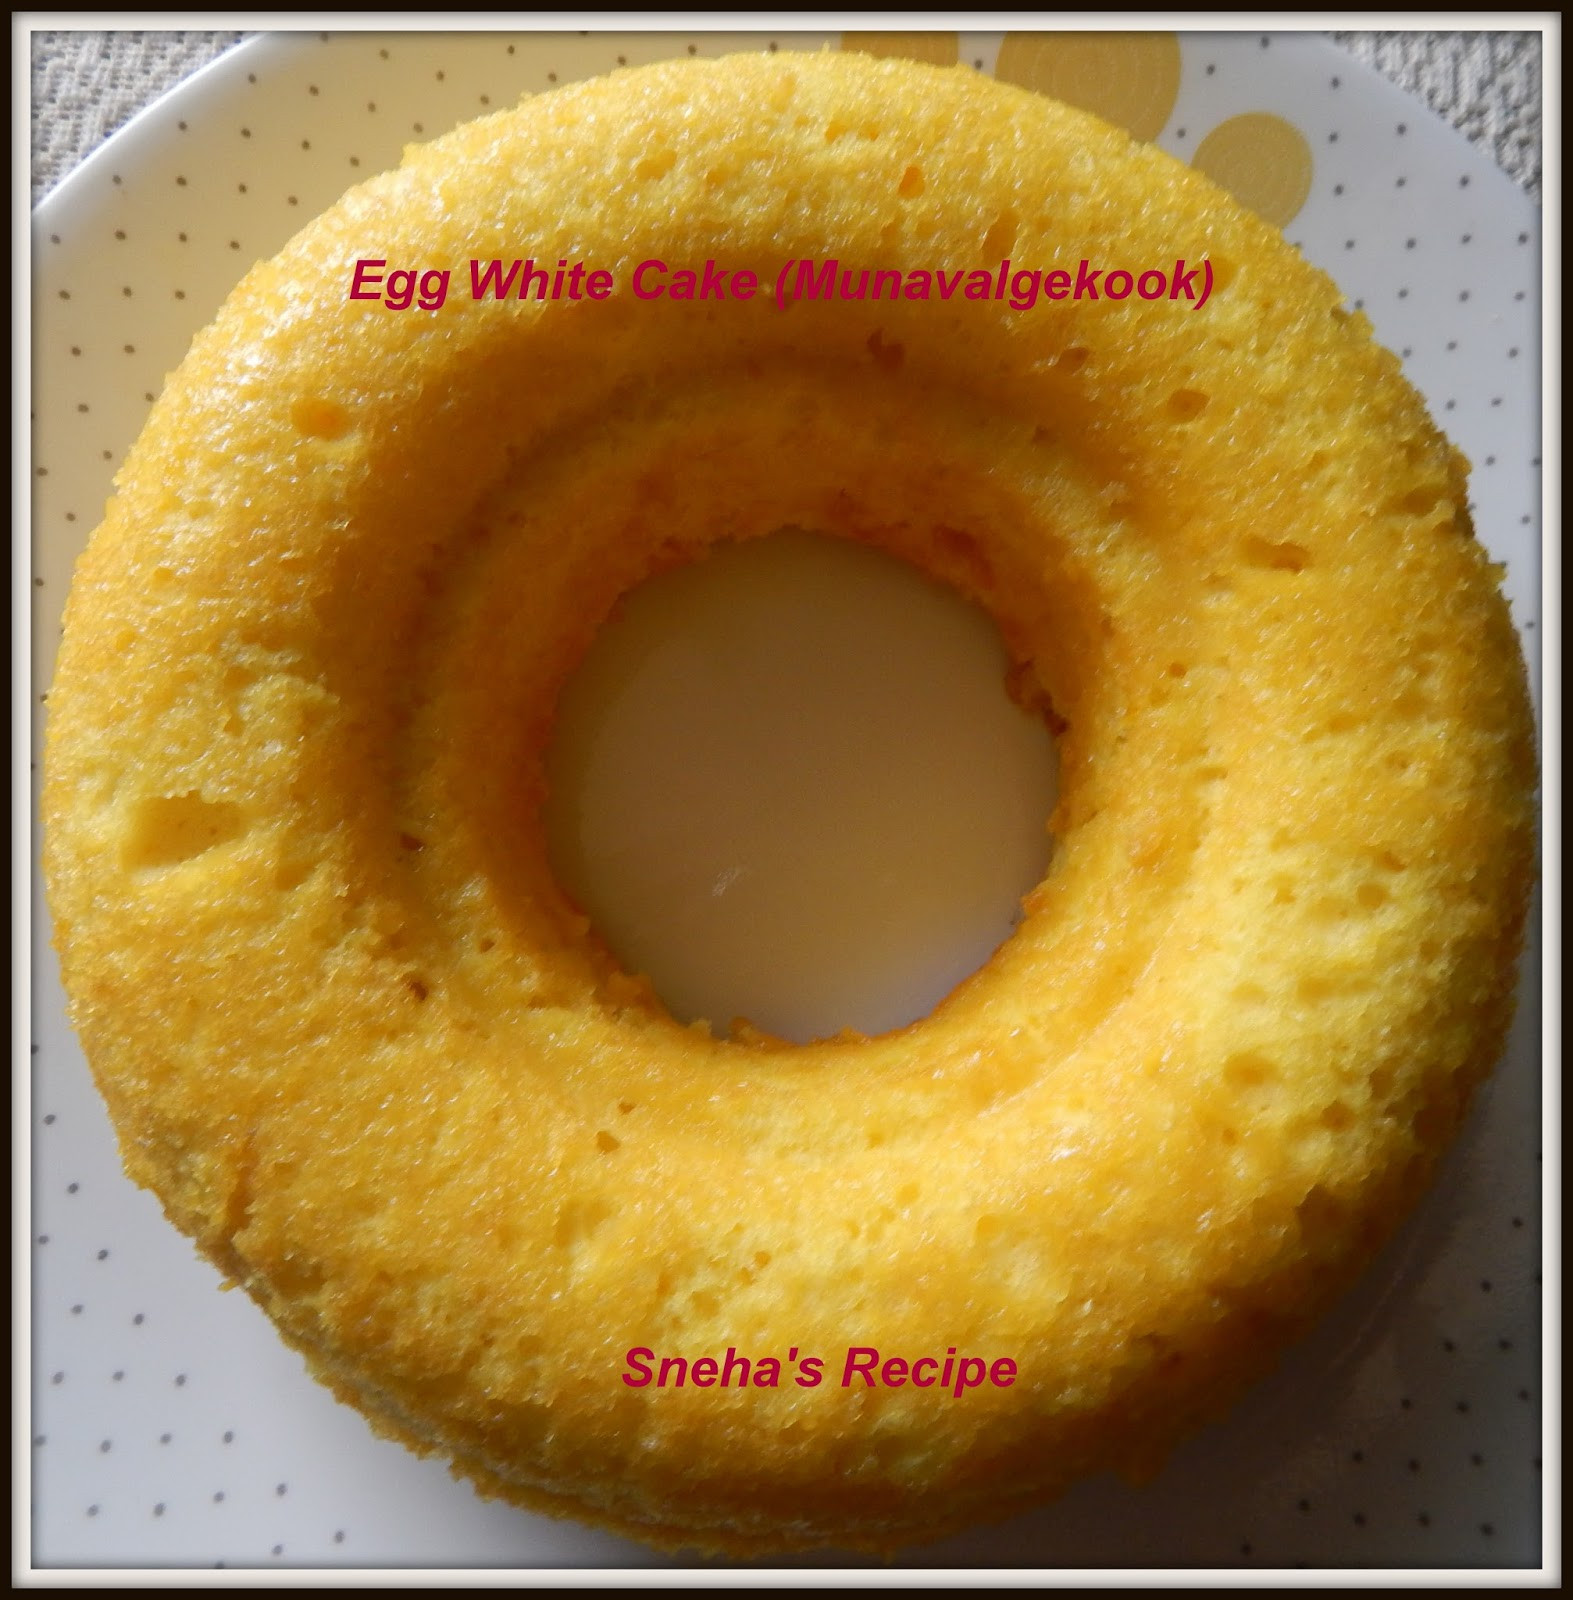 Egg Whites Cake Recipe
 Egg White Cake Munavalgekook Sneha s Recipe